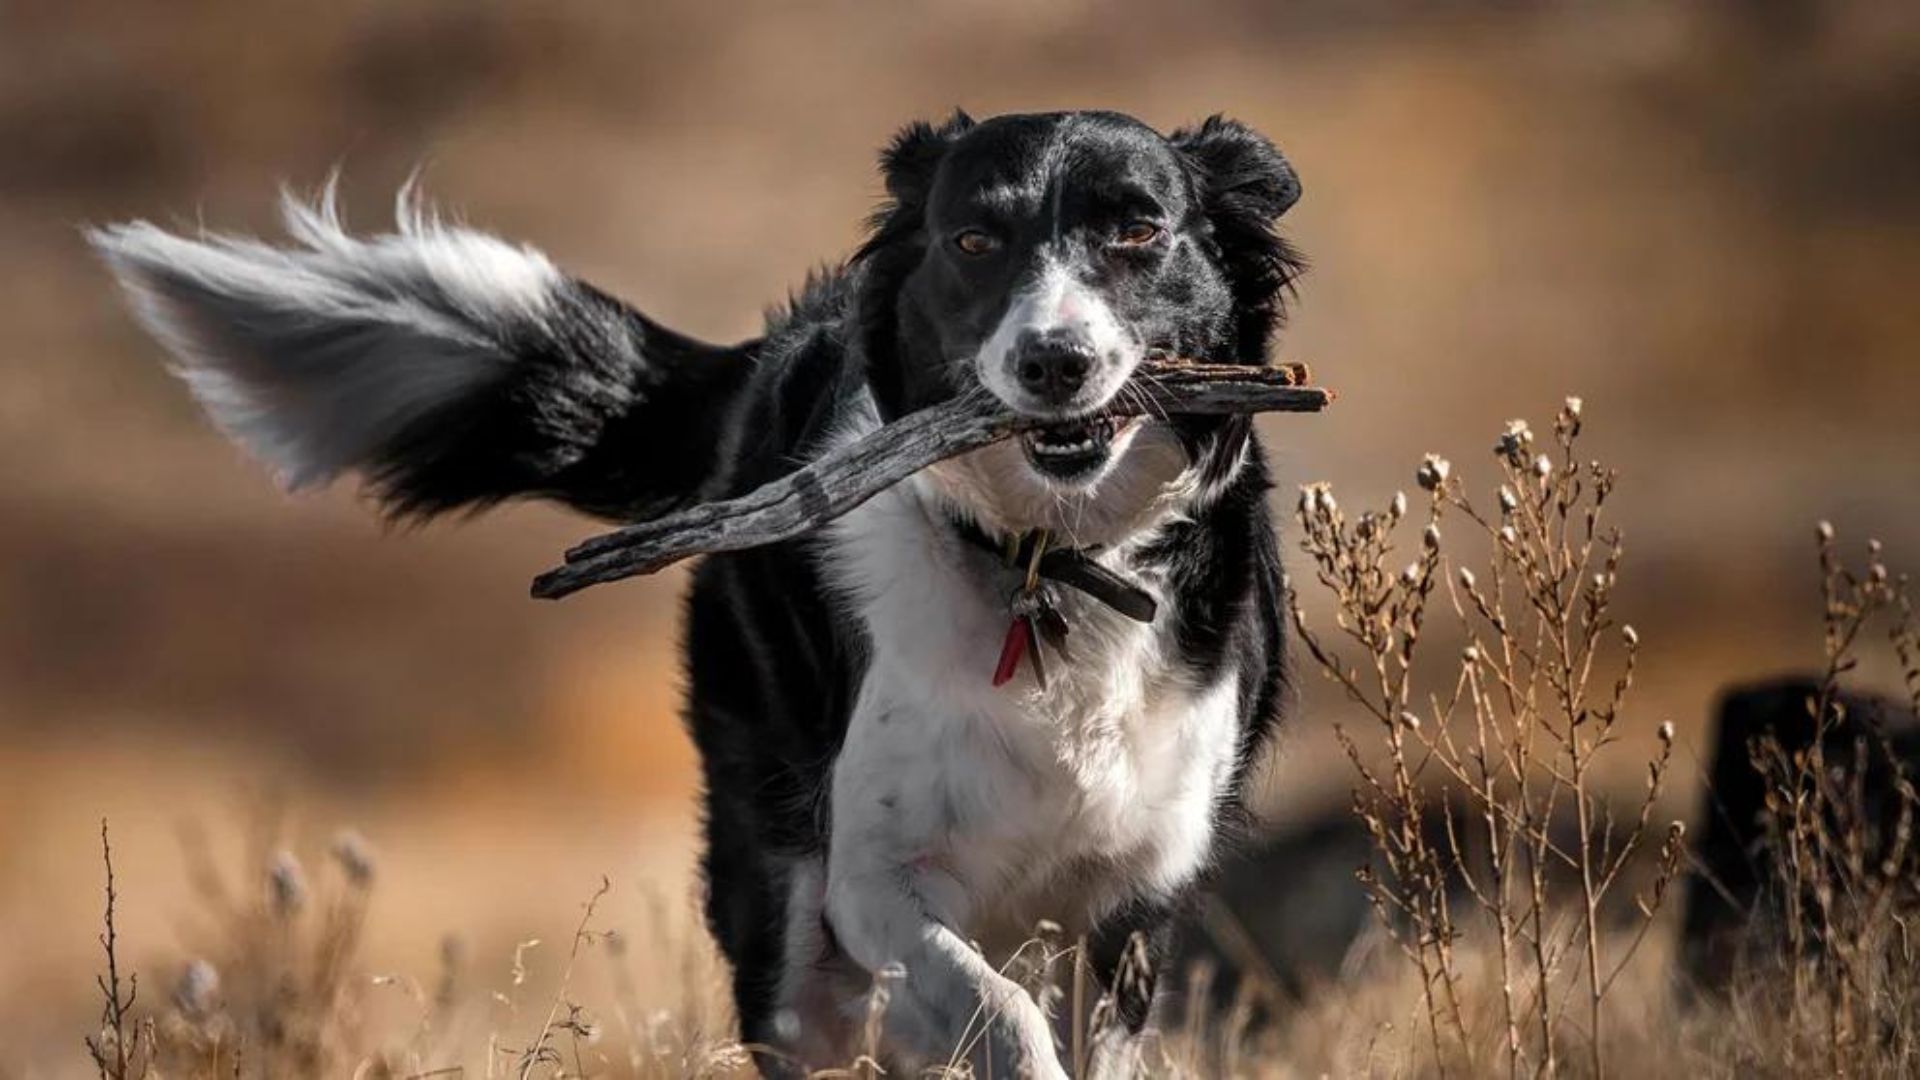 Los momentos de juego y de dispersión son esenciales para una vida sin estrés en el perro (Getty)